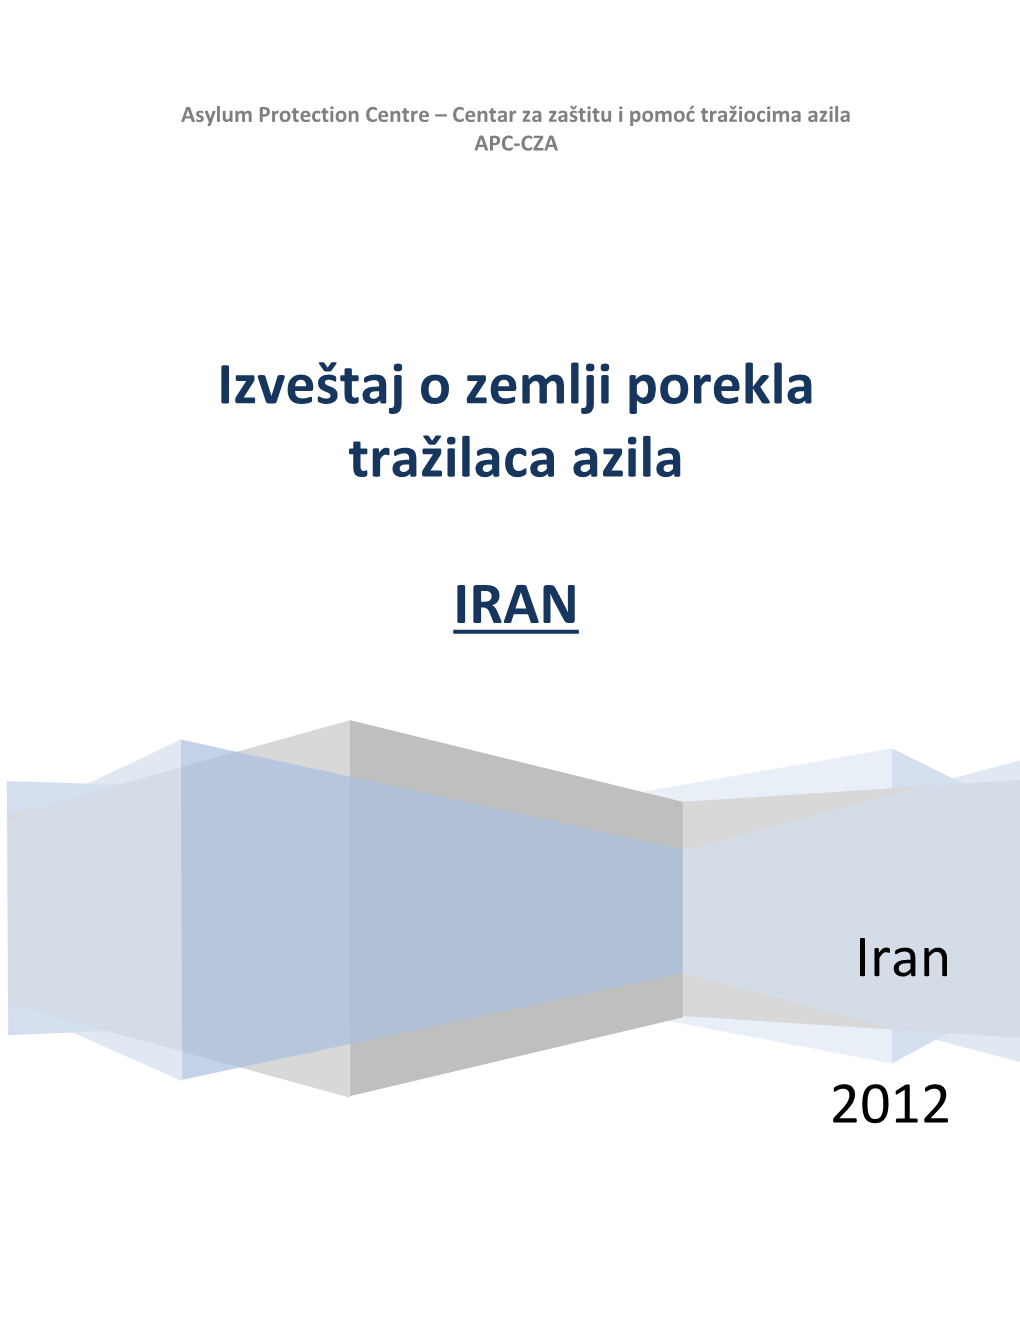 PDF COI Iran 2012